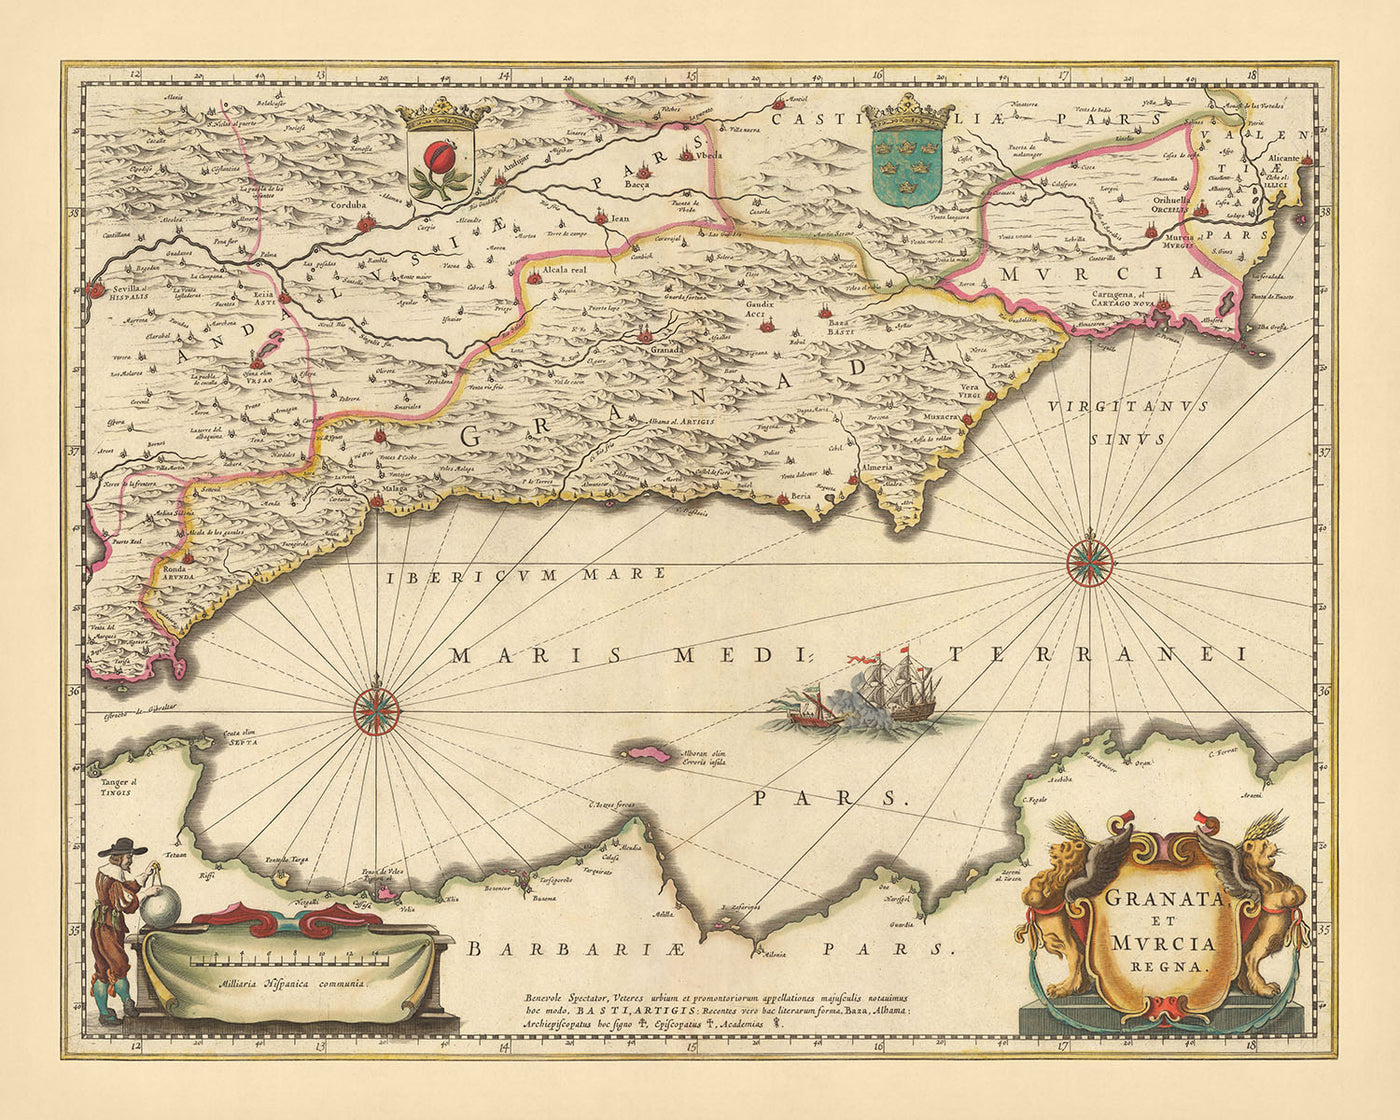 Alte Karte der Königreiche Granada und Murcia, Spanien von Visscher, 1690: Málaga, Gibraltar, Sevilla, Murcia, Tanger